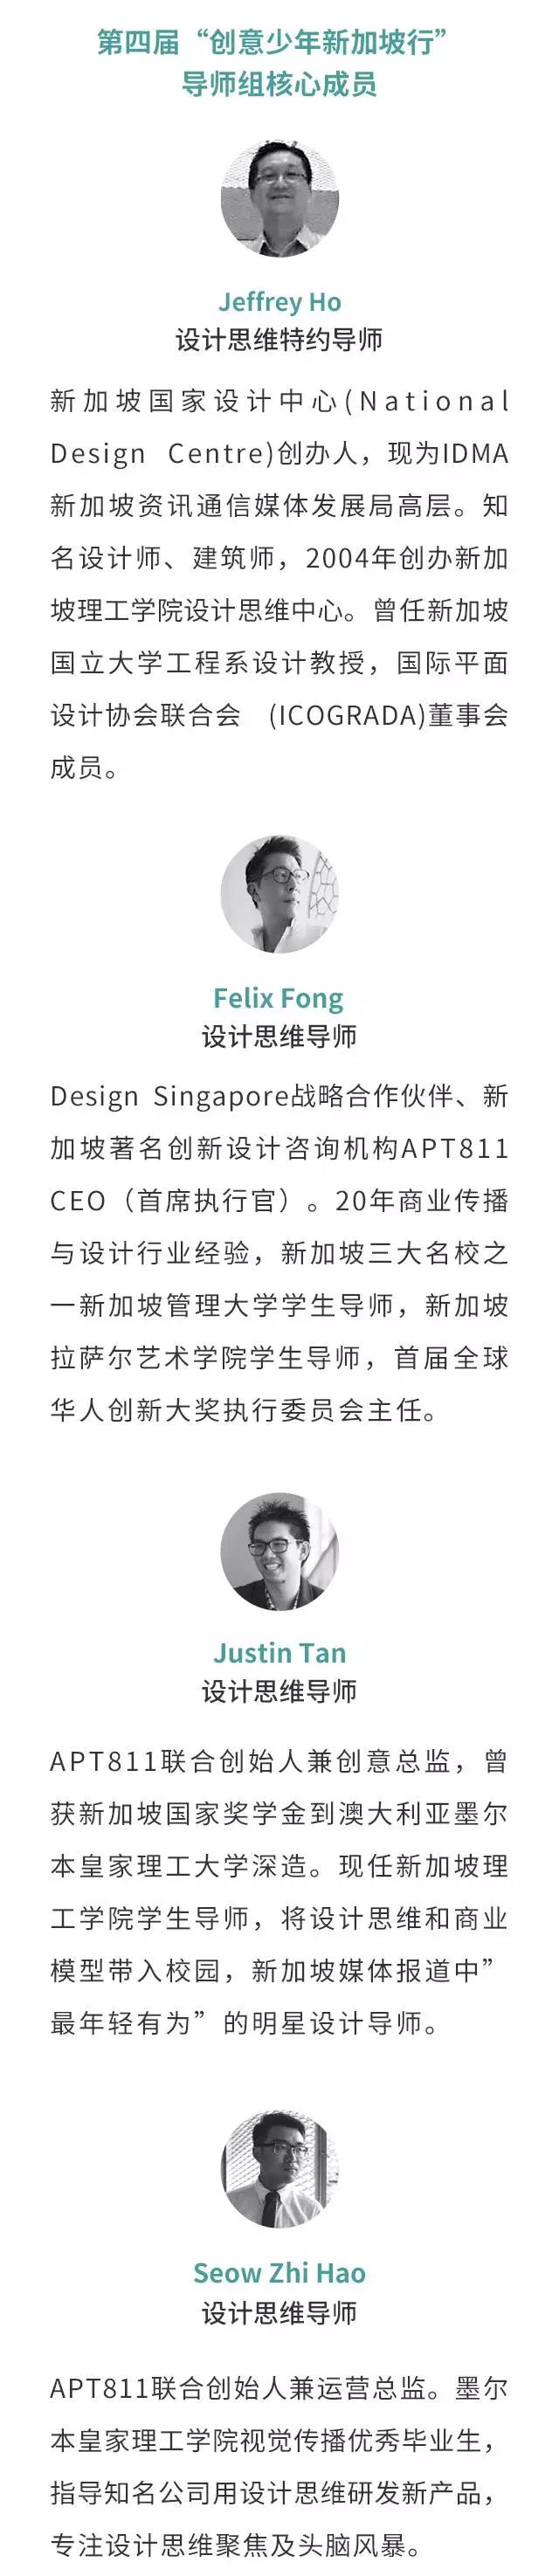 2018寒假“创意少年新加坡行”目前已经截止报名